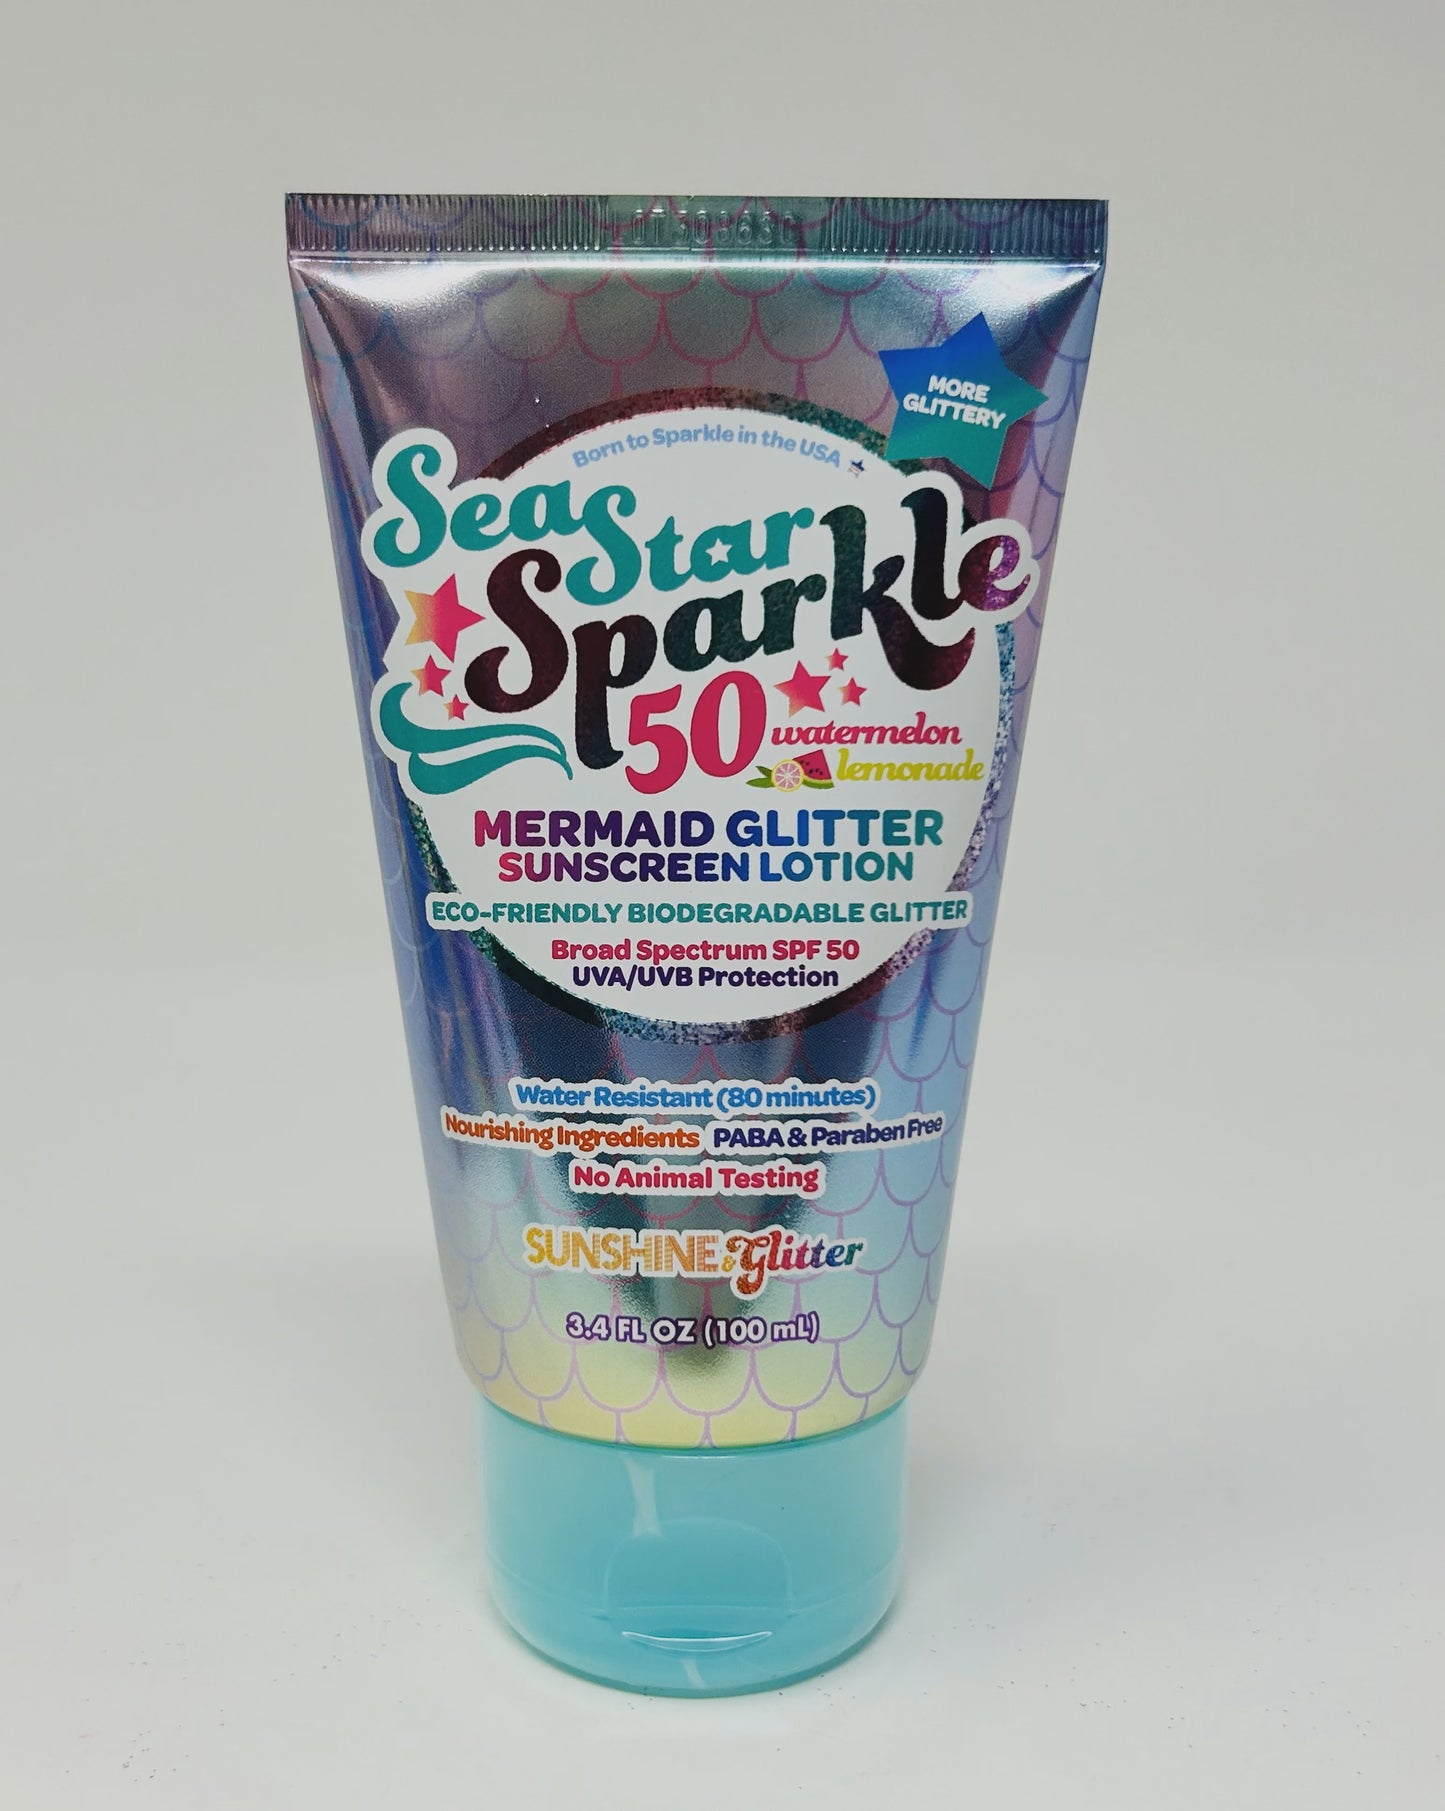 Sea Star Sparkle SPF 50 Mermaid